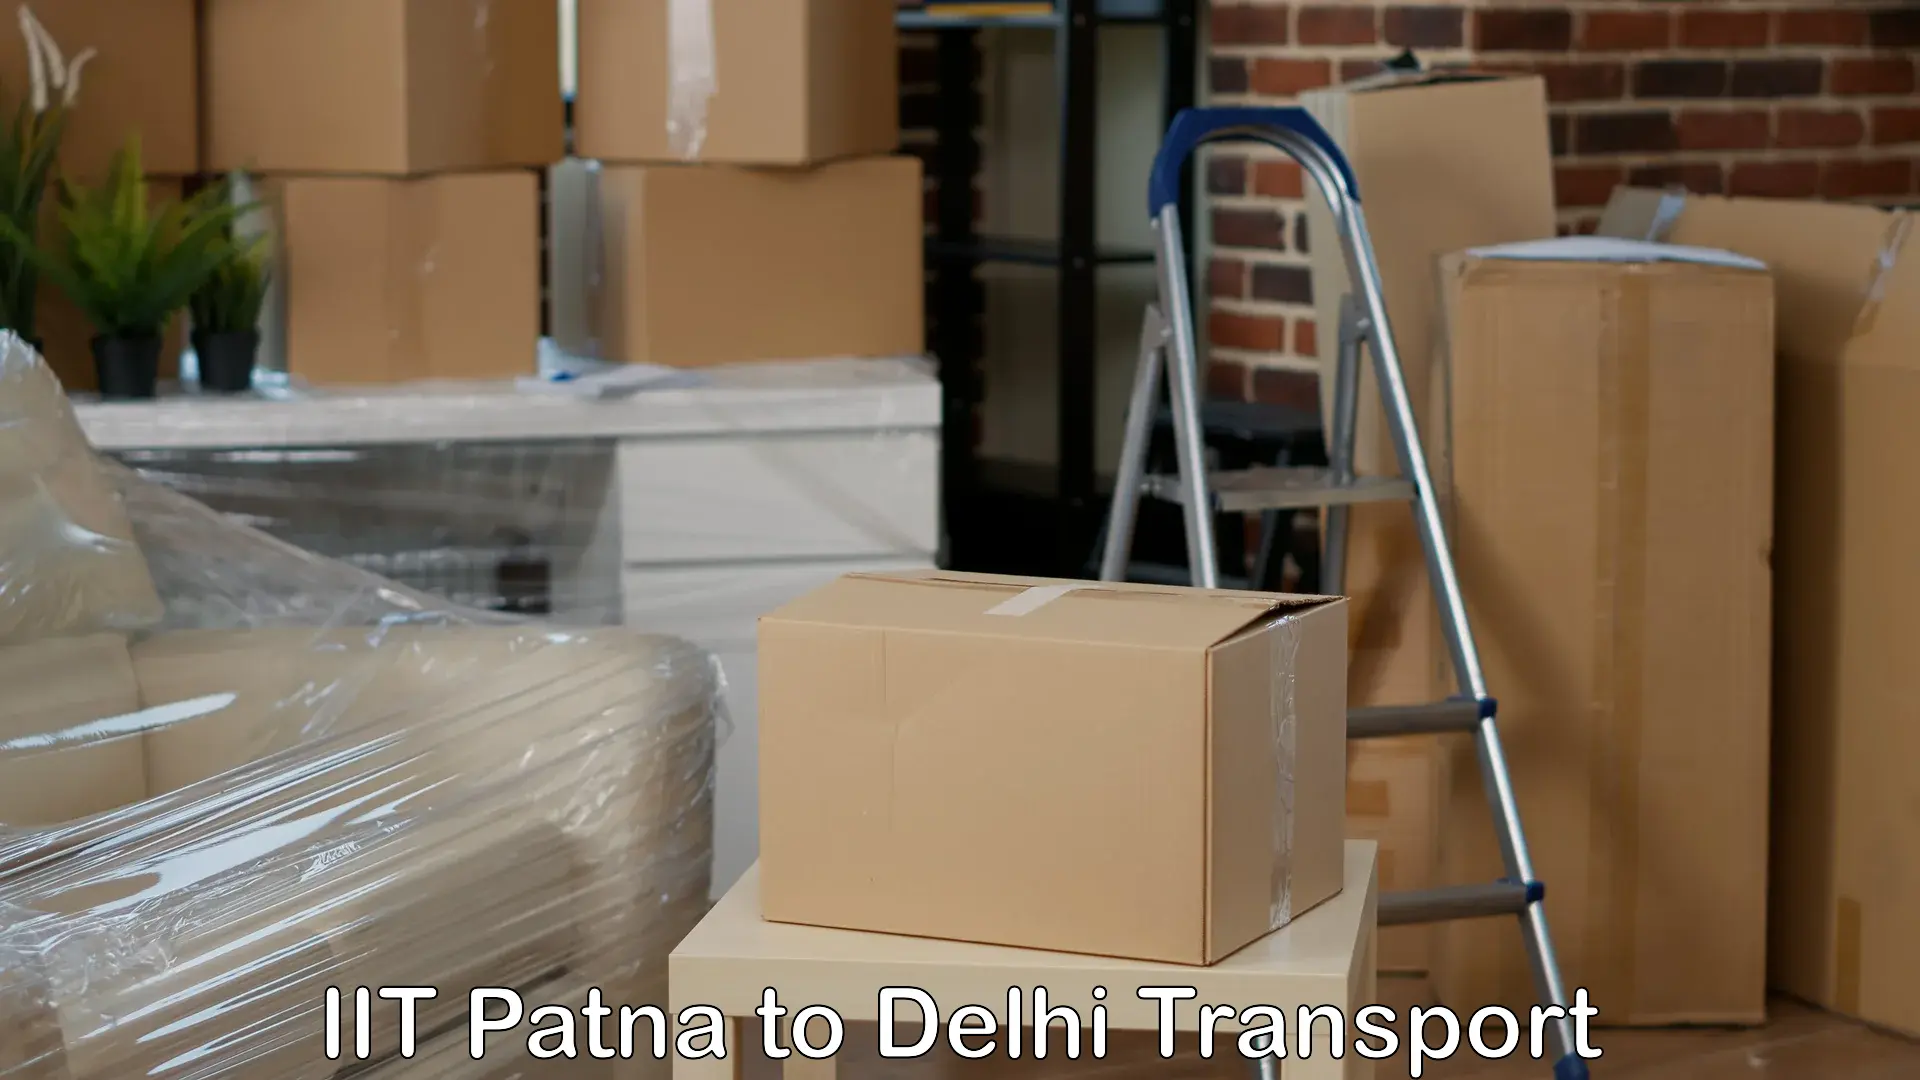 Lorry transport service IIT Patna to Burari